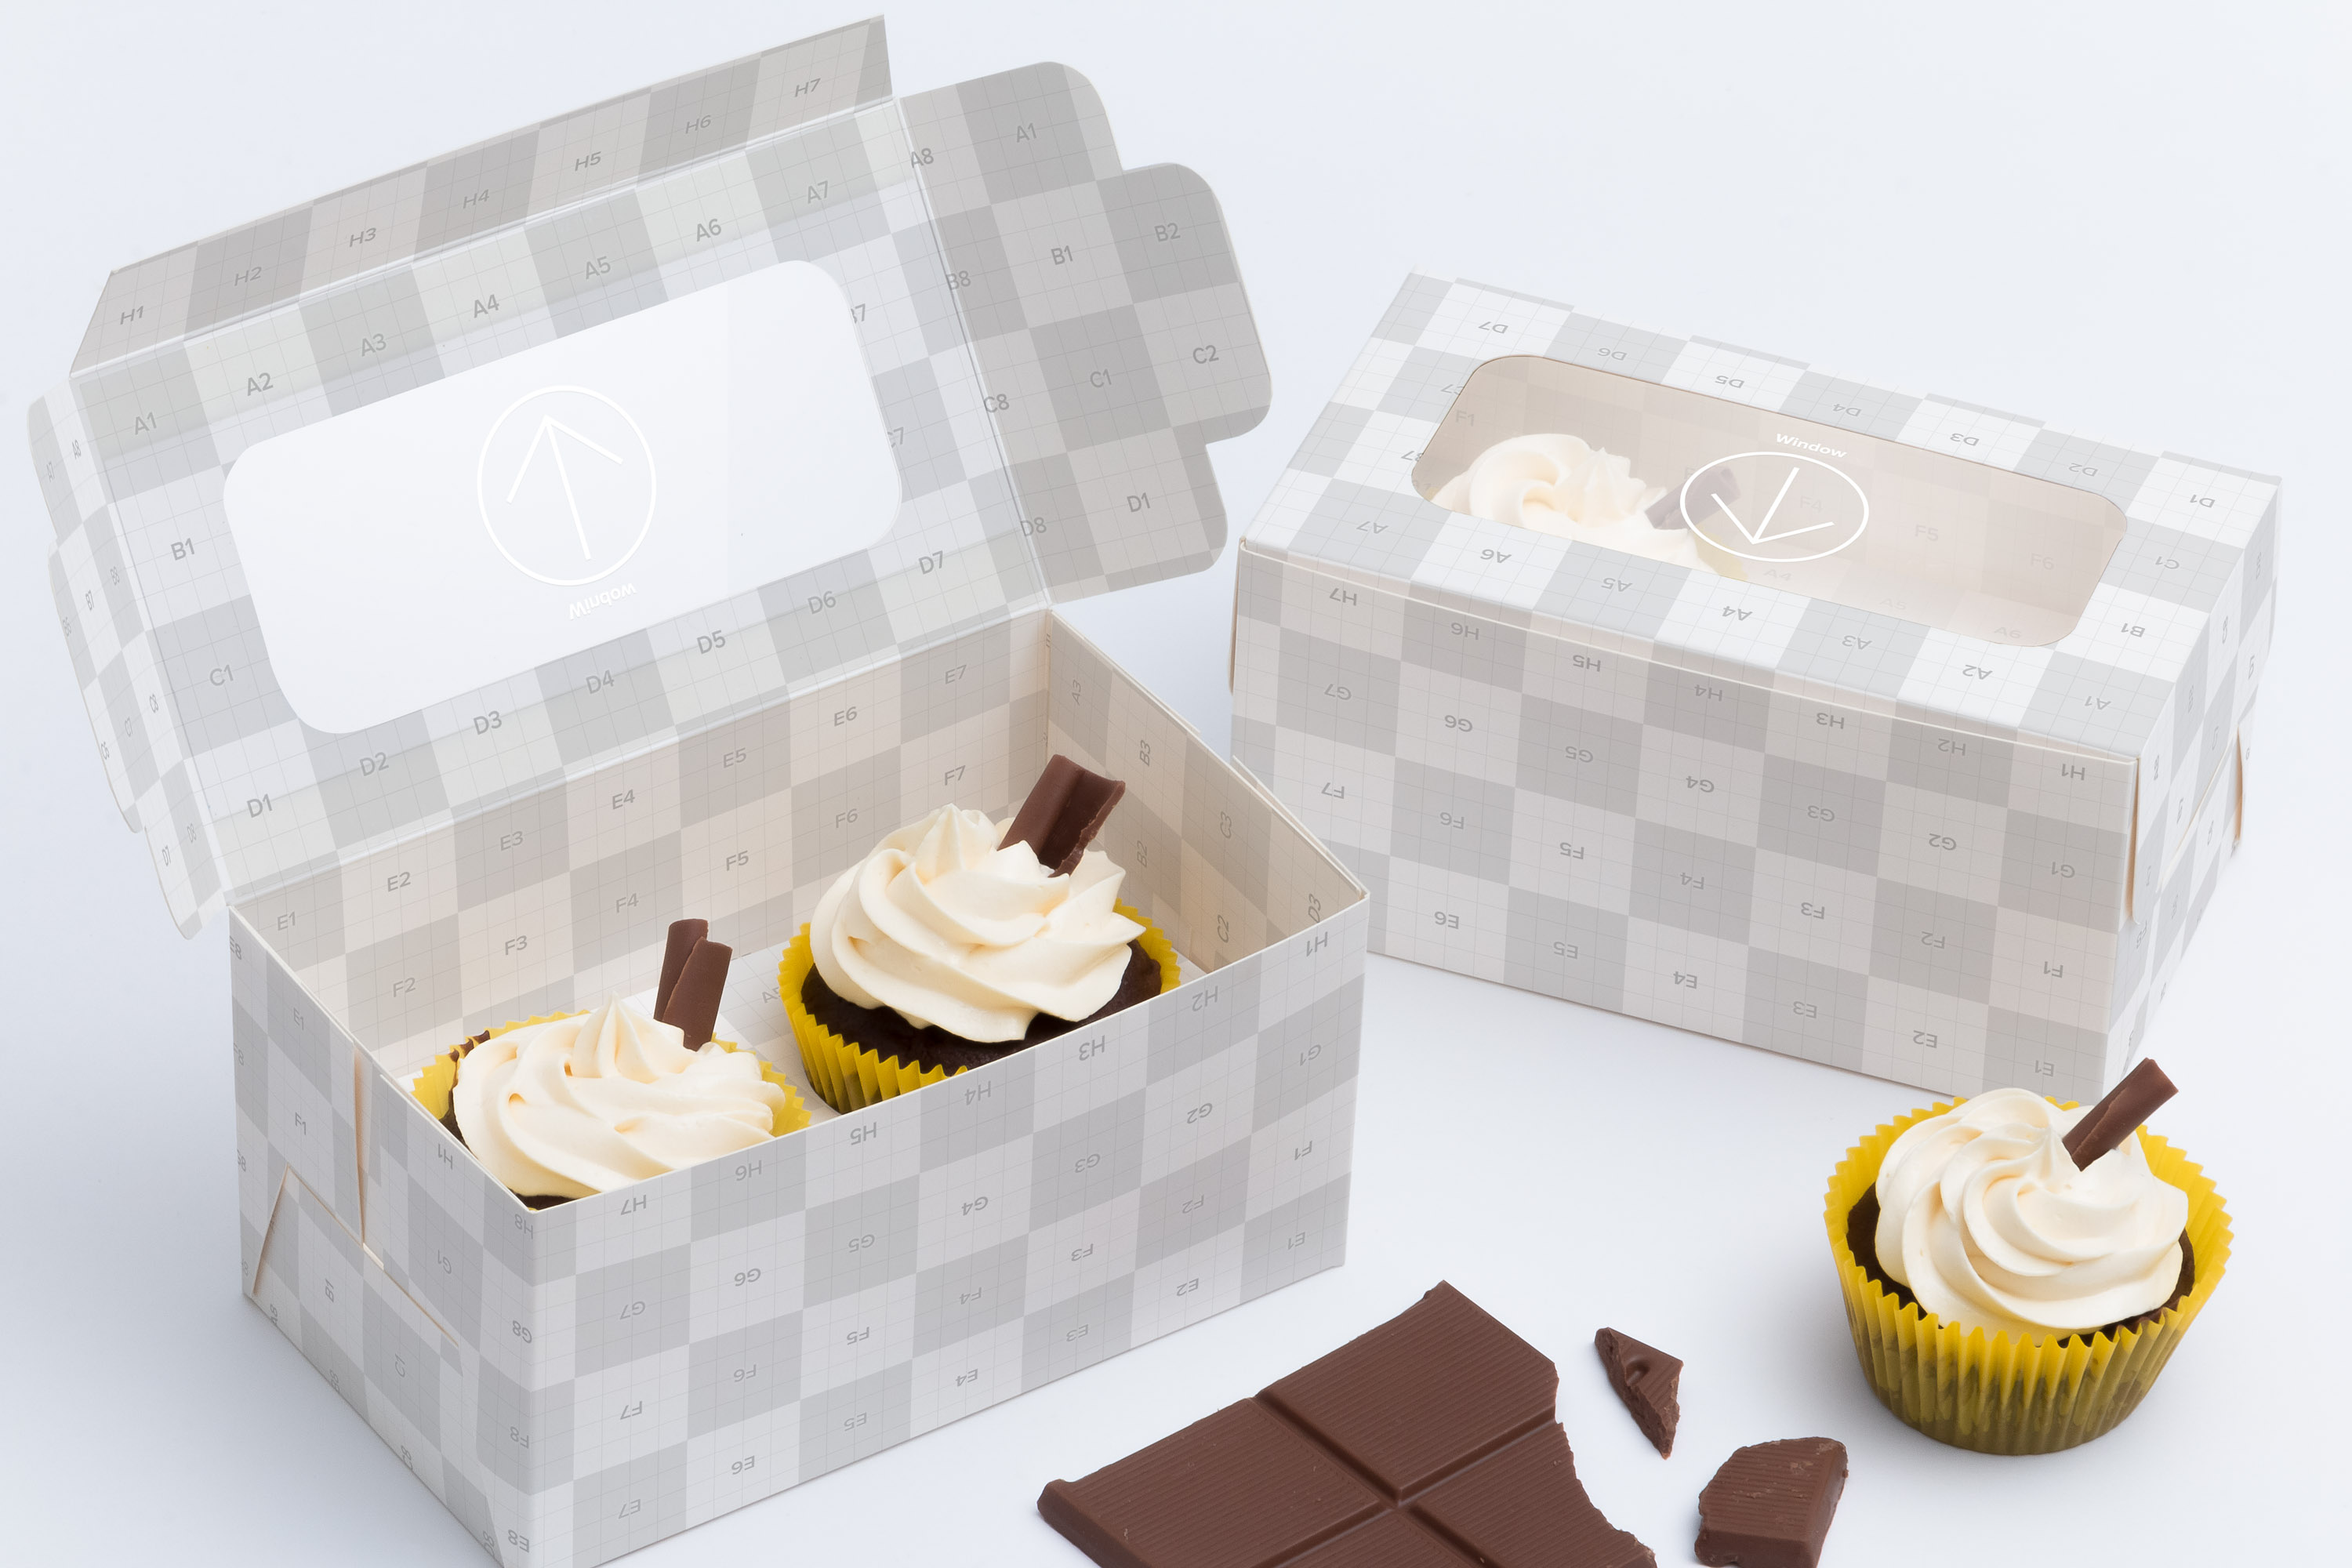 两只装纸杯蛋糕包装盒设计效果图样机01 Two Cupcake Box Mockup 01插图(2)